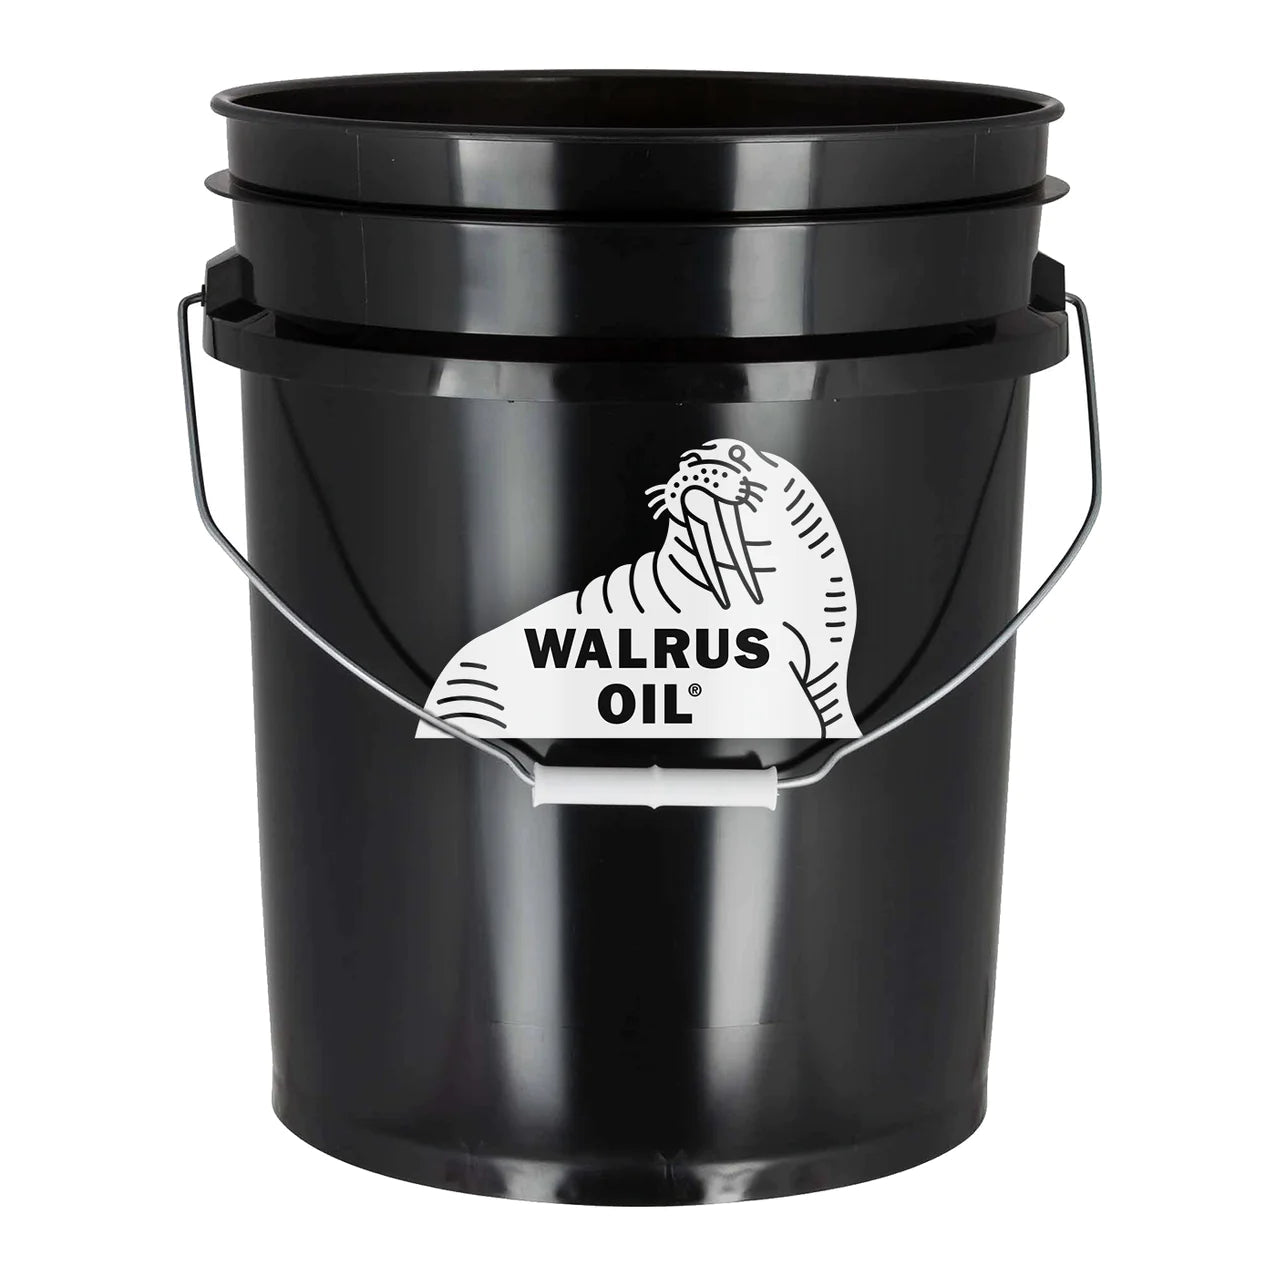 Walrus Oil Pure Tung Oil | Finish | Hamilton Lee Supply